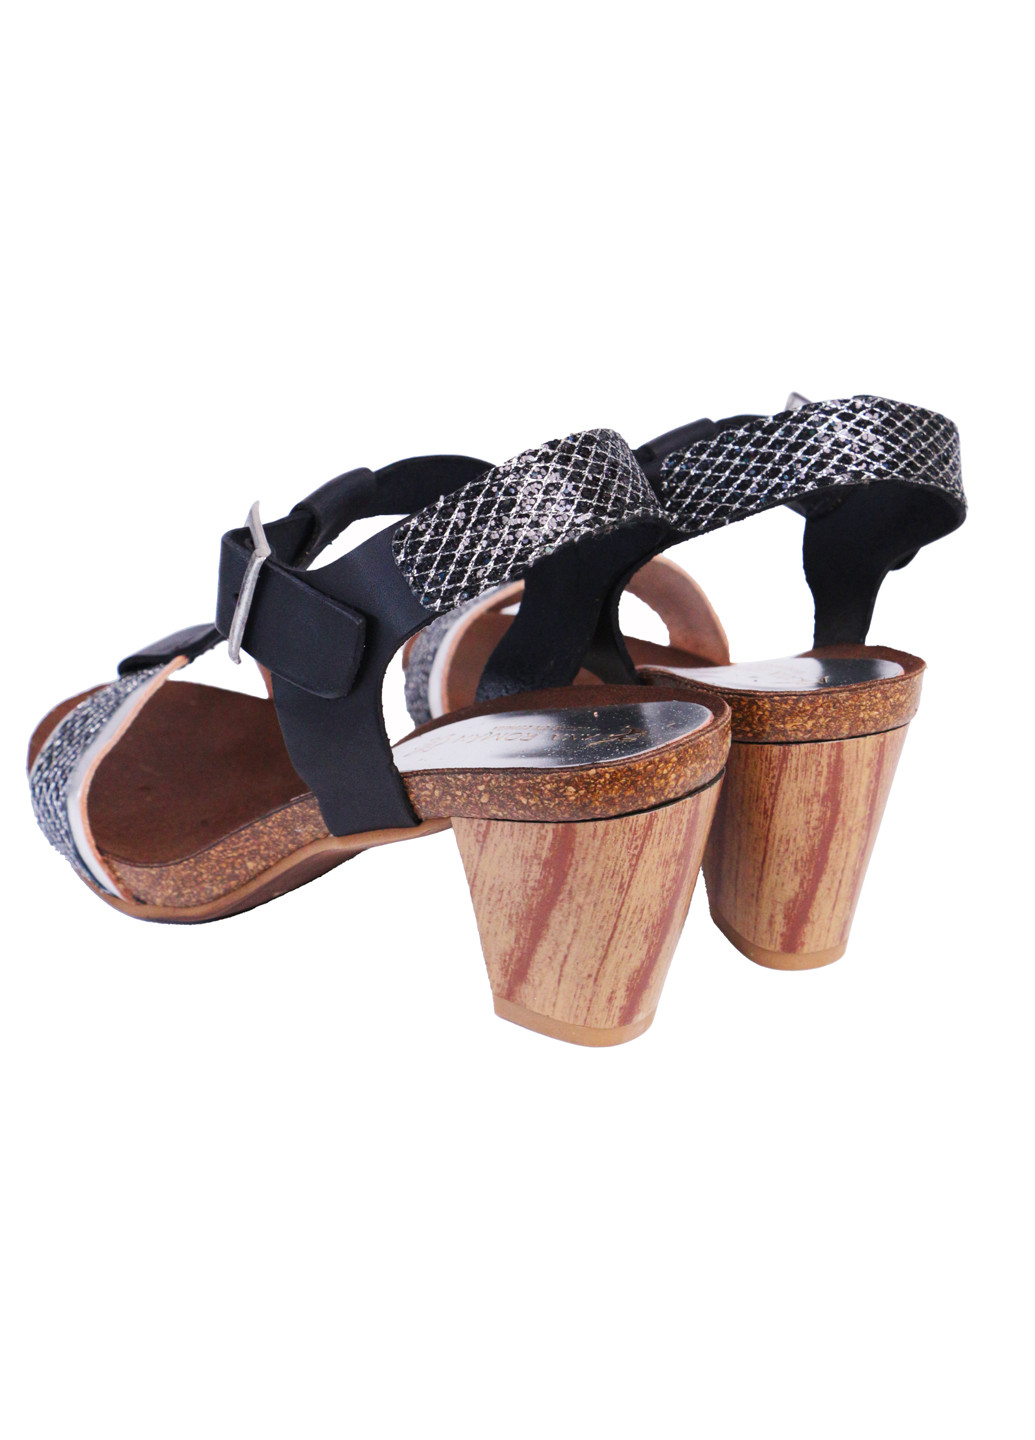 Комбинированные босоножки летние женские натуральная кожа на широком каблуке 36 черно-серебристые a&d Lidl